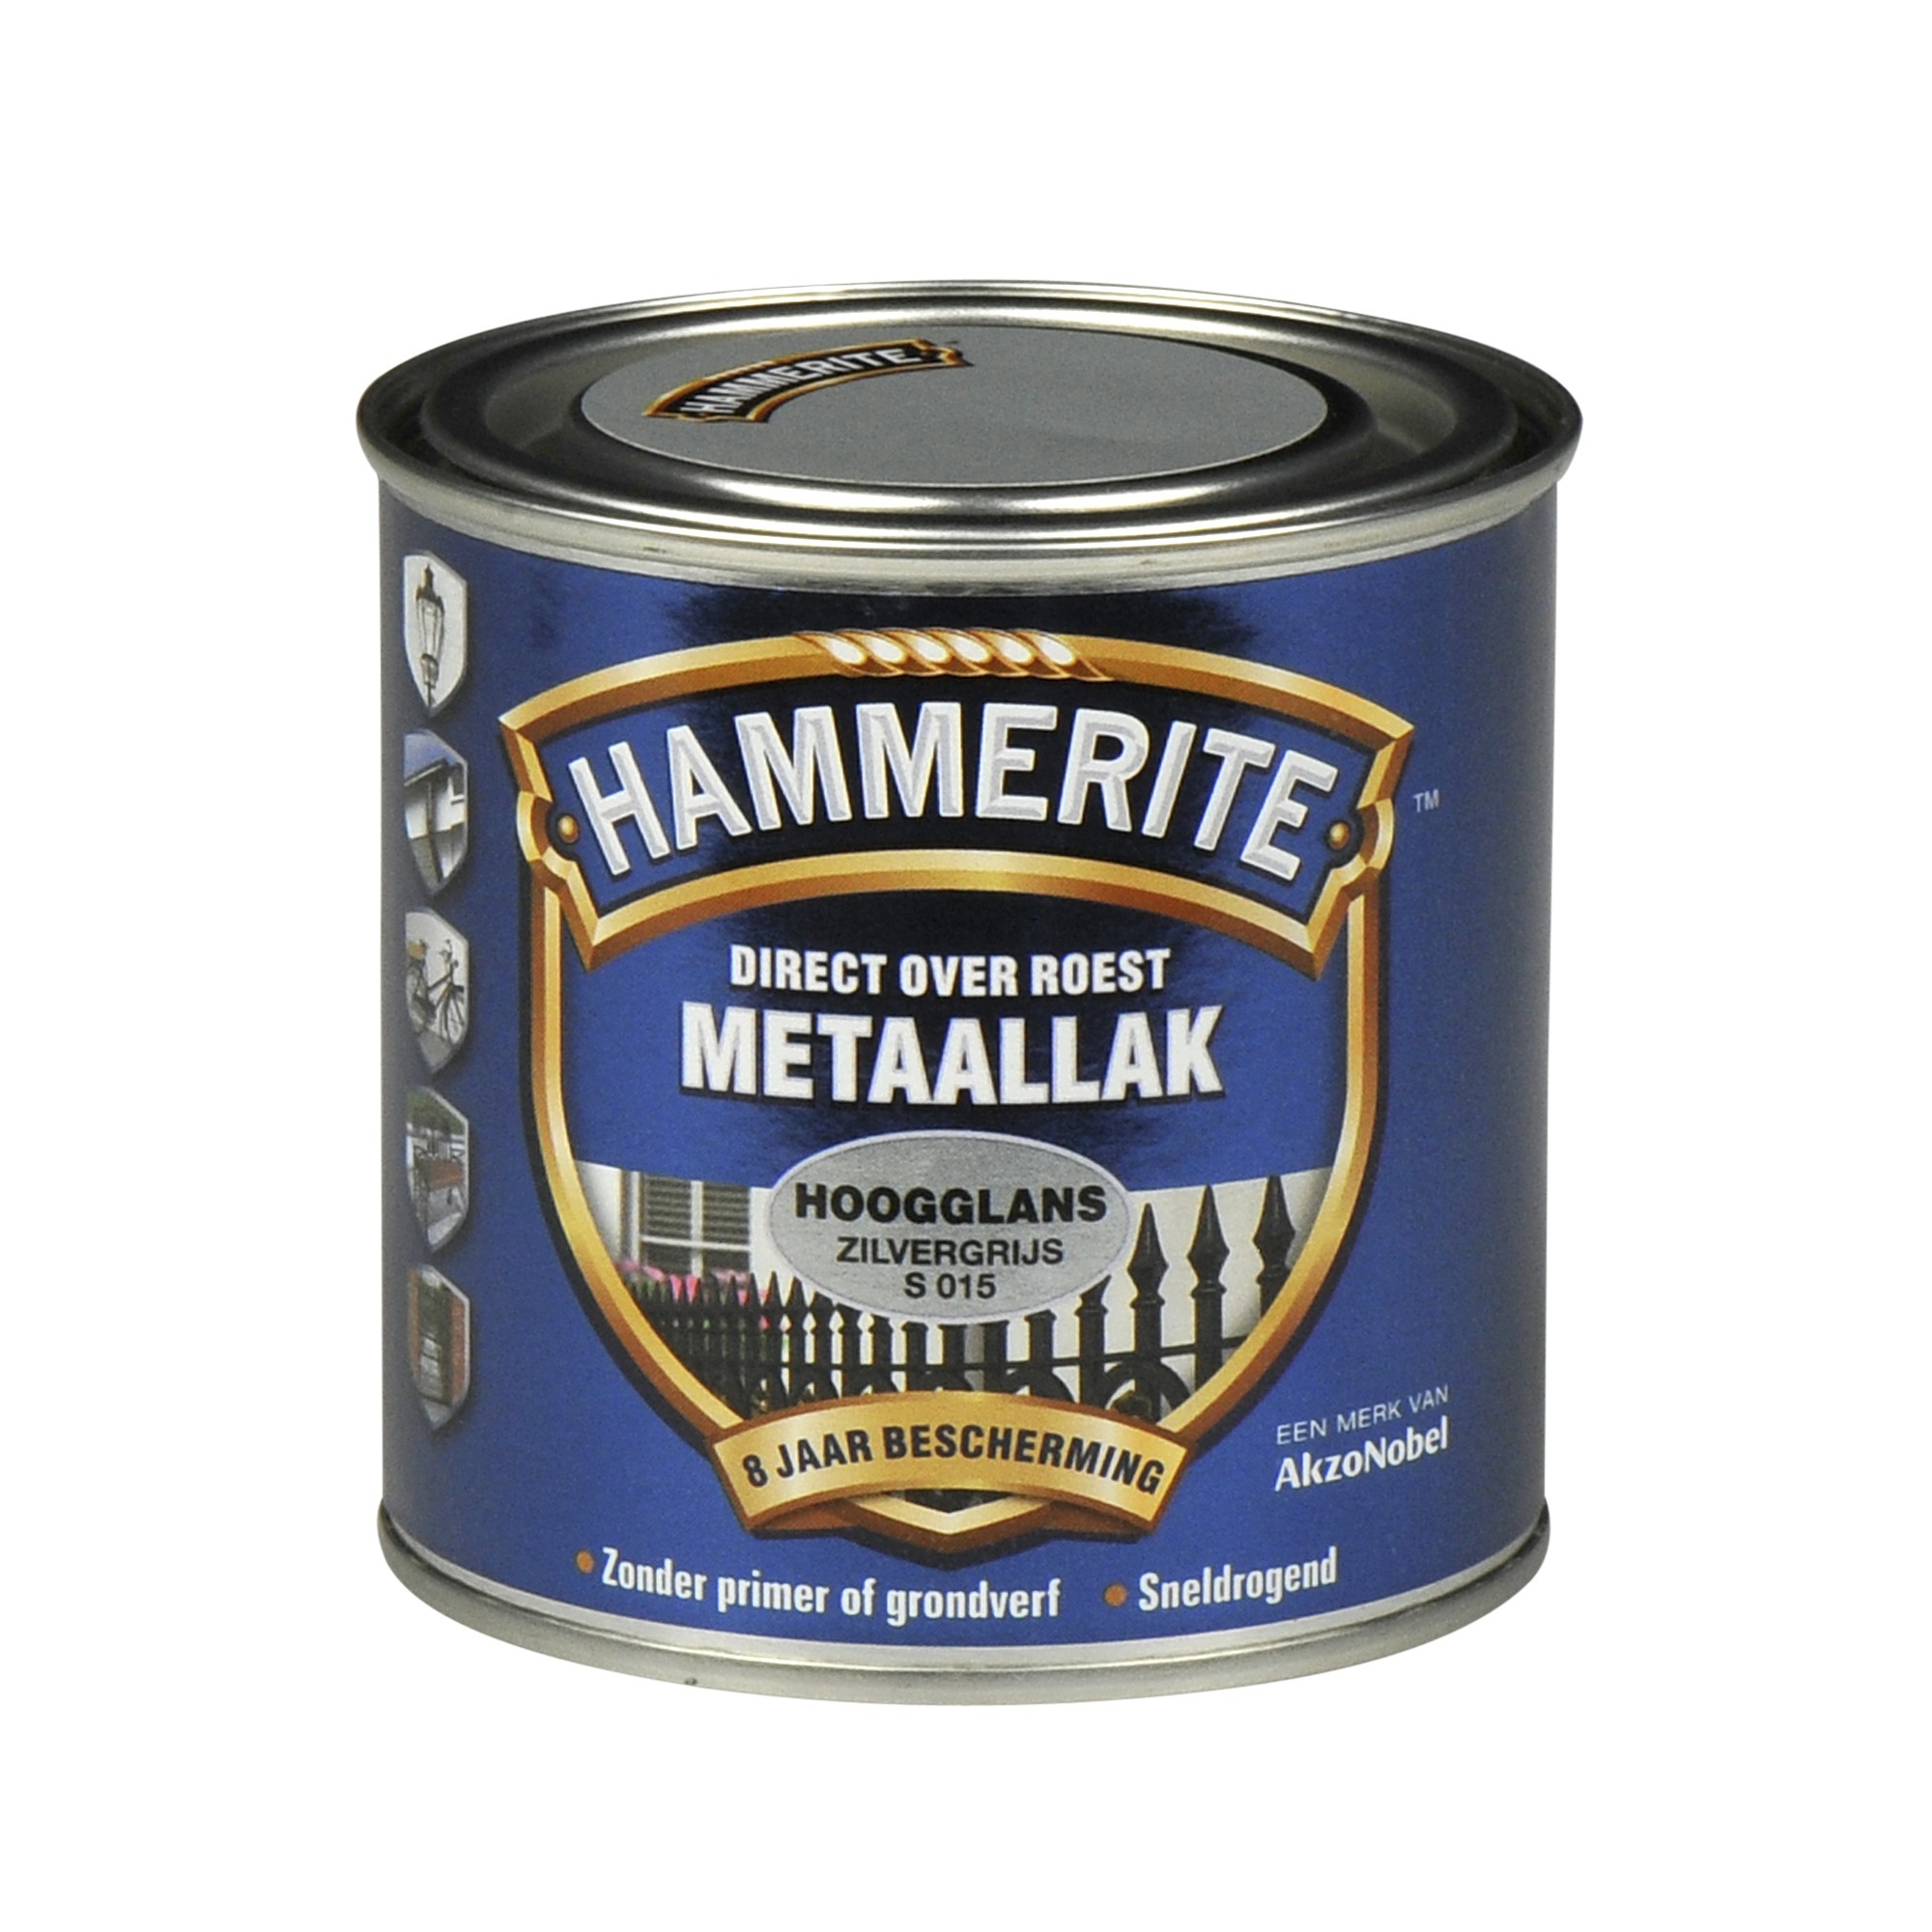 Hammerite direct over roest metaallak hoogglans zilvergrijs - 250 ml